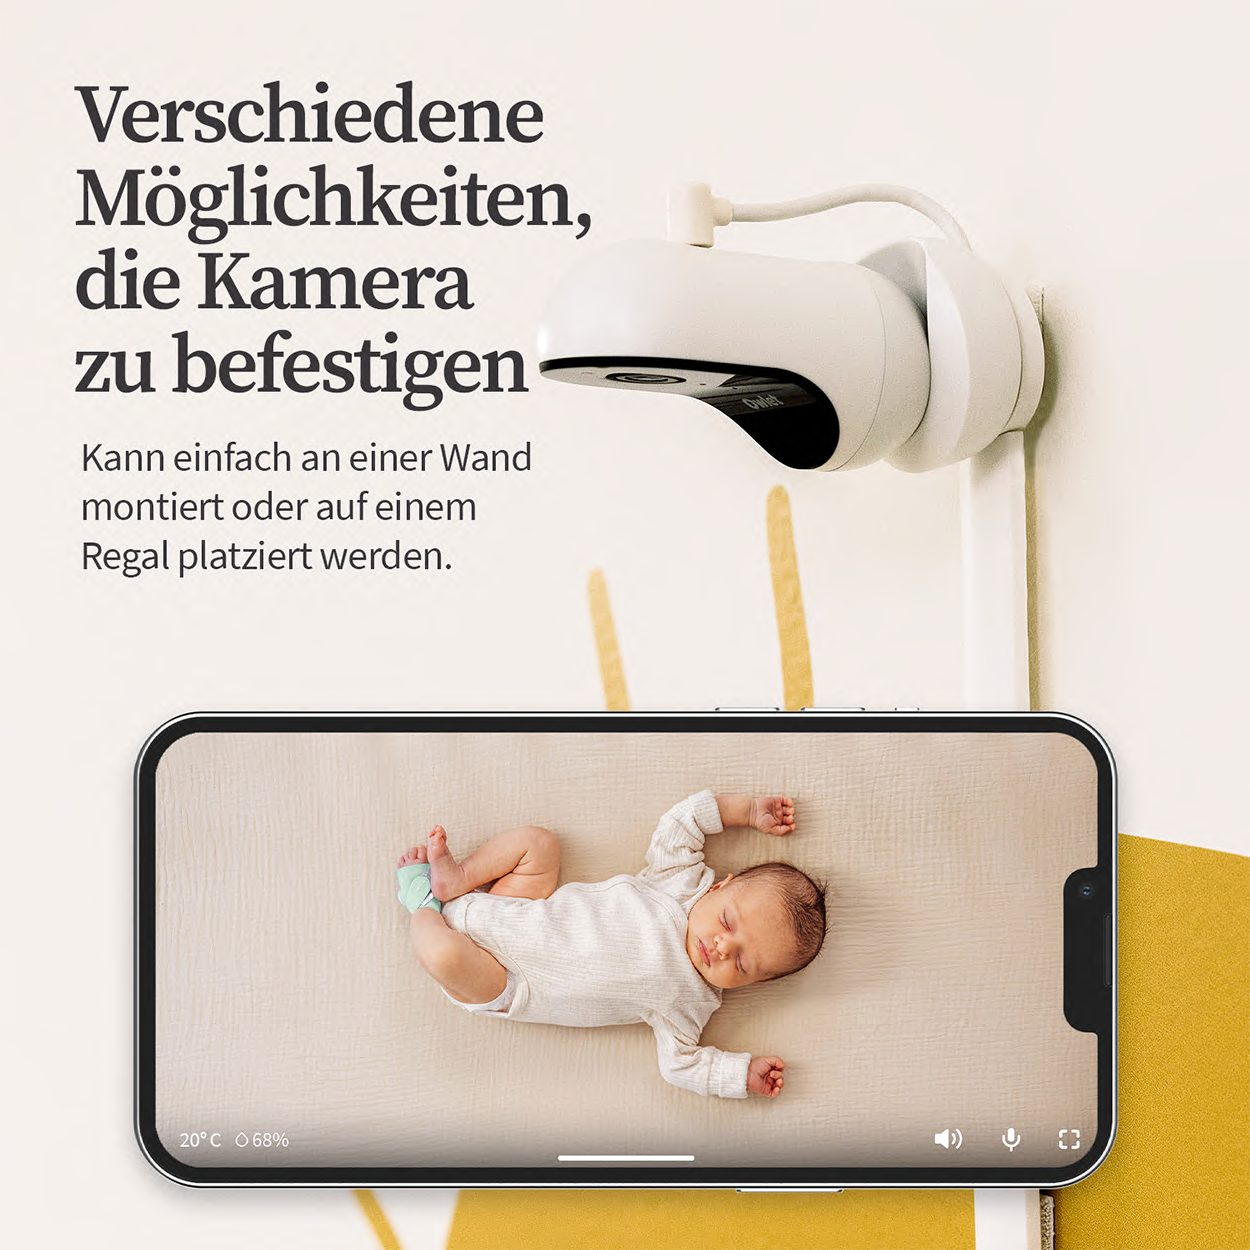 2: inkl. Babyphone, DE HD Baby Owlet und Raumtemperatur- Weiß Luftfeuchtigkeitsmesser Kamera Care